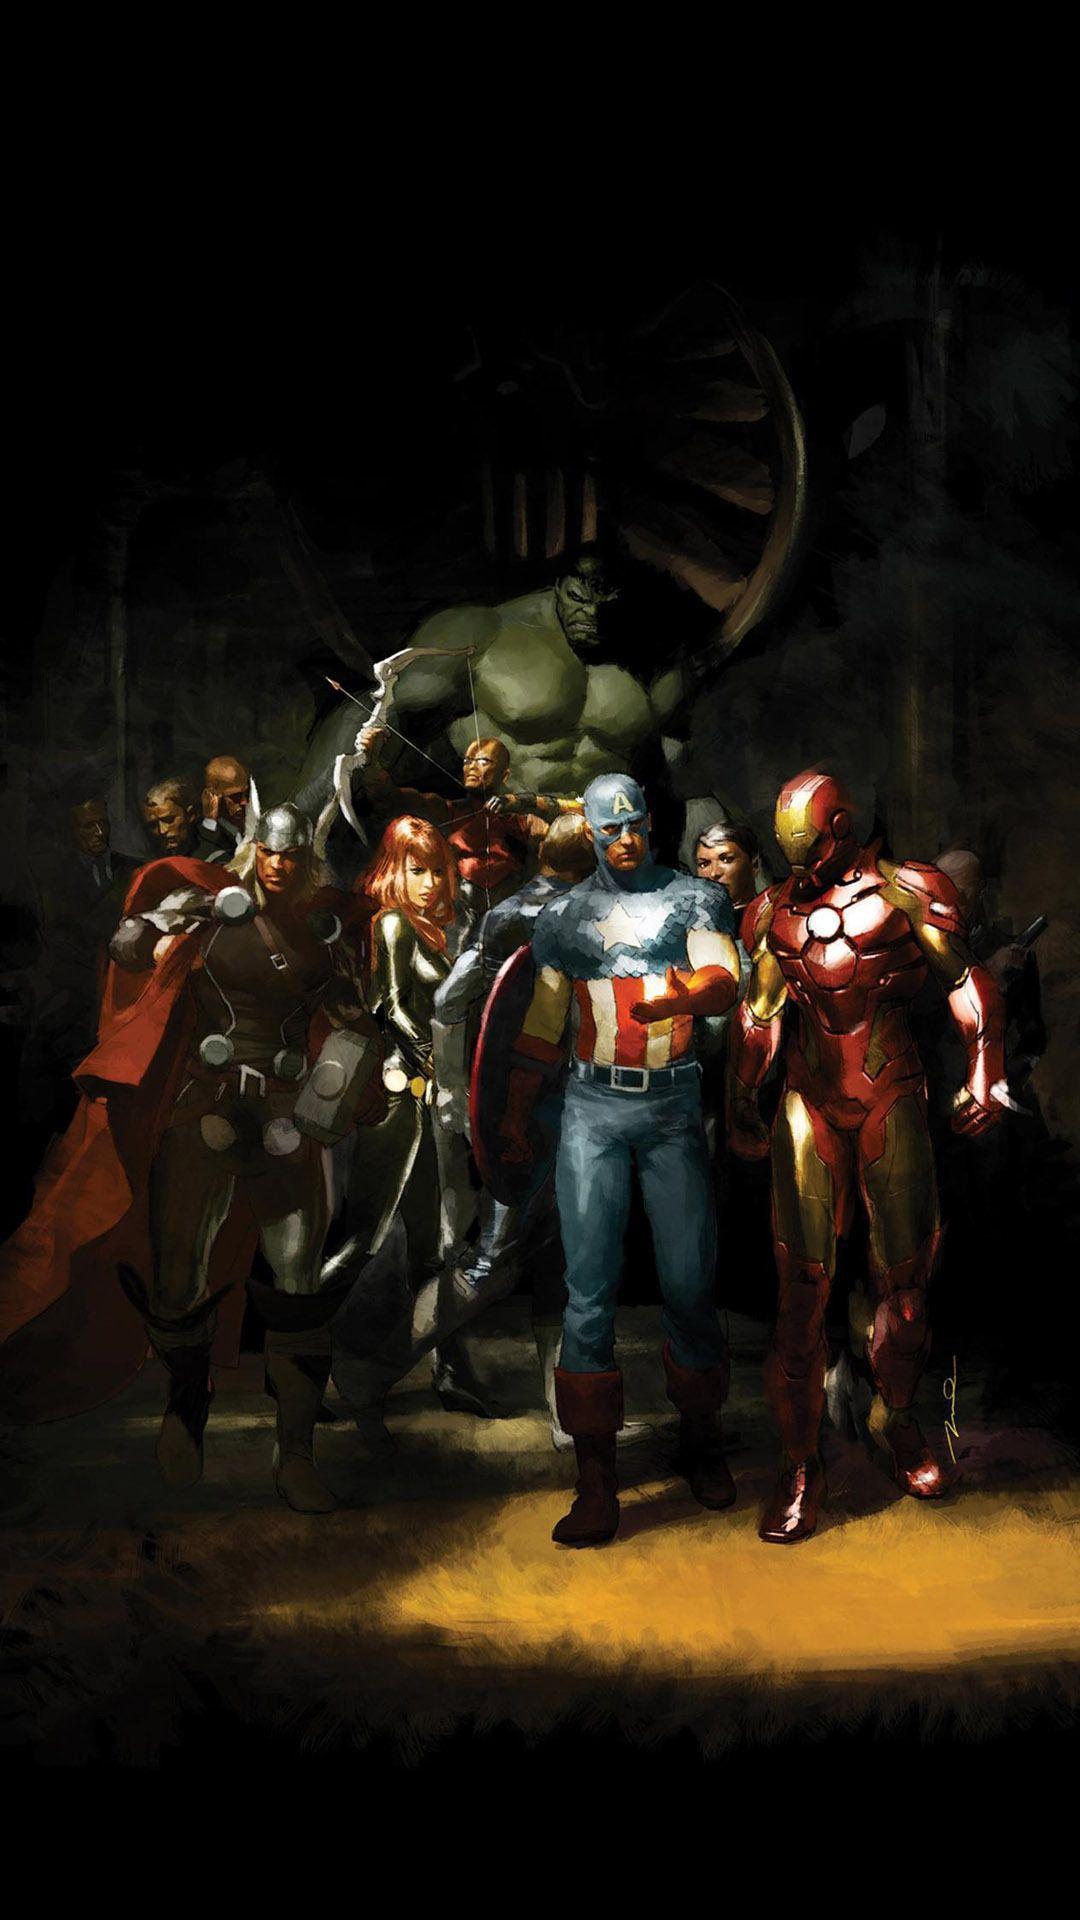 Hãy cùng chào đón đội Avengers với hình nền Avenger 4K tuyệt đẹp trên màn hình máy tính của bạn. Cảm nhận được sức mạnh và niềm kiên cường từ các siêu anh hùng khi làm việc hoặc giải trí.